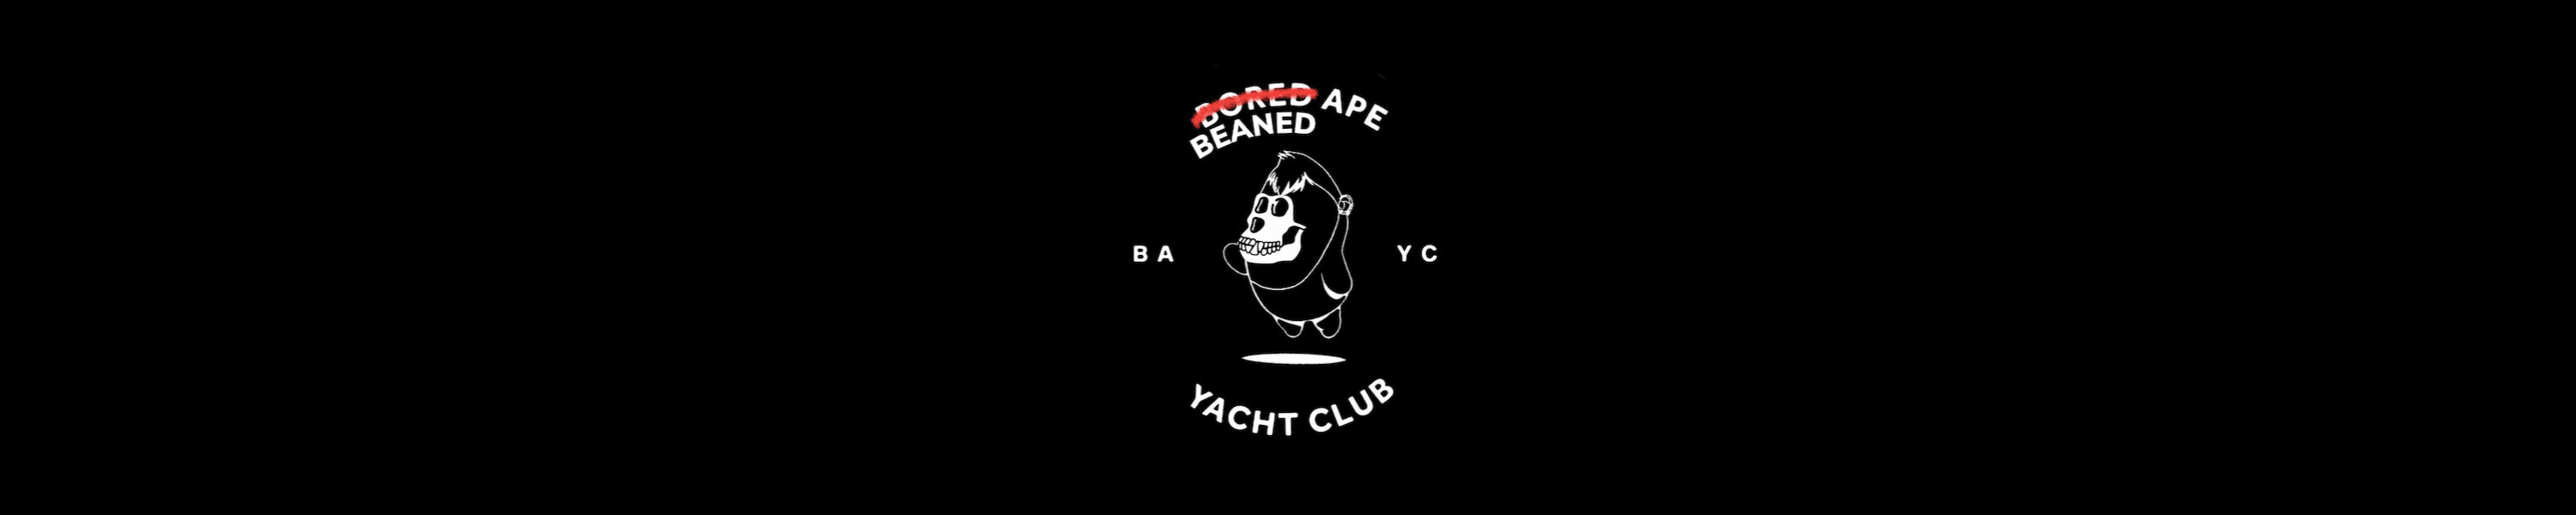 Beaned Ape Yacht Club